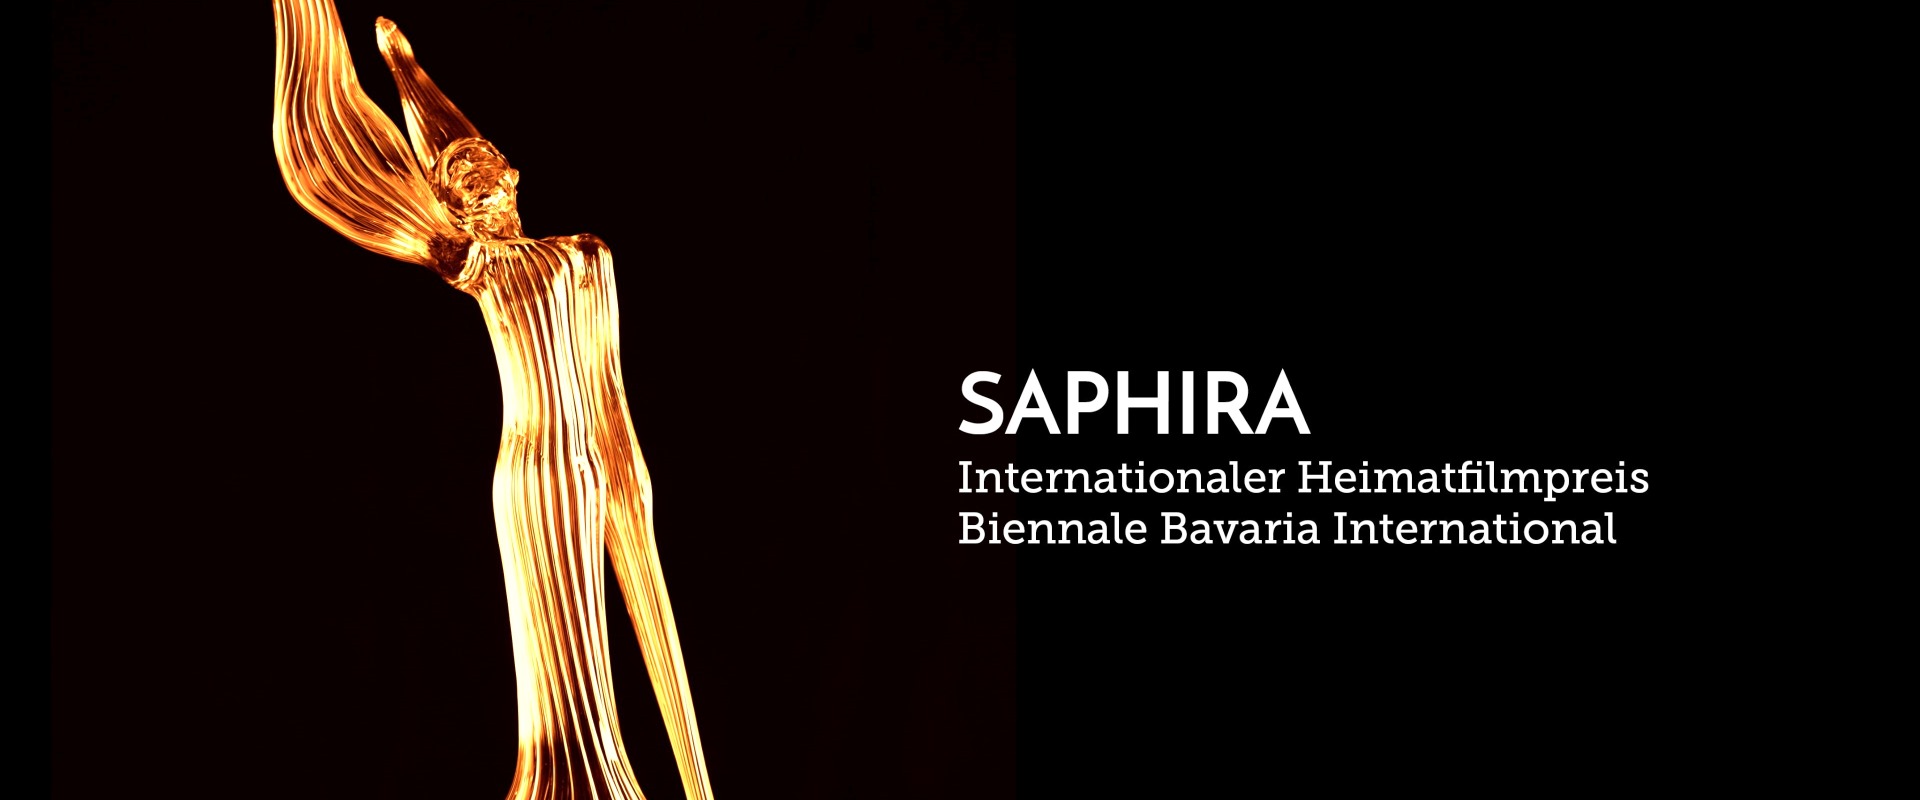 Der Filmpreis Saphira ist eine gläserne Statue.  